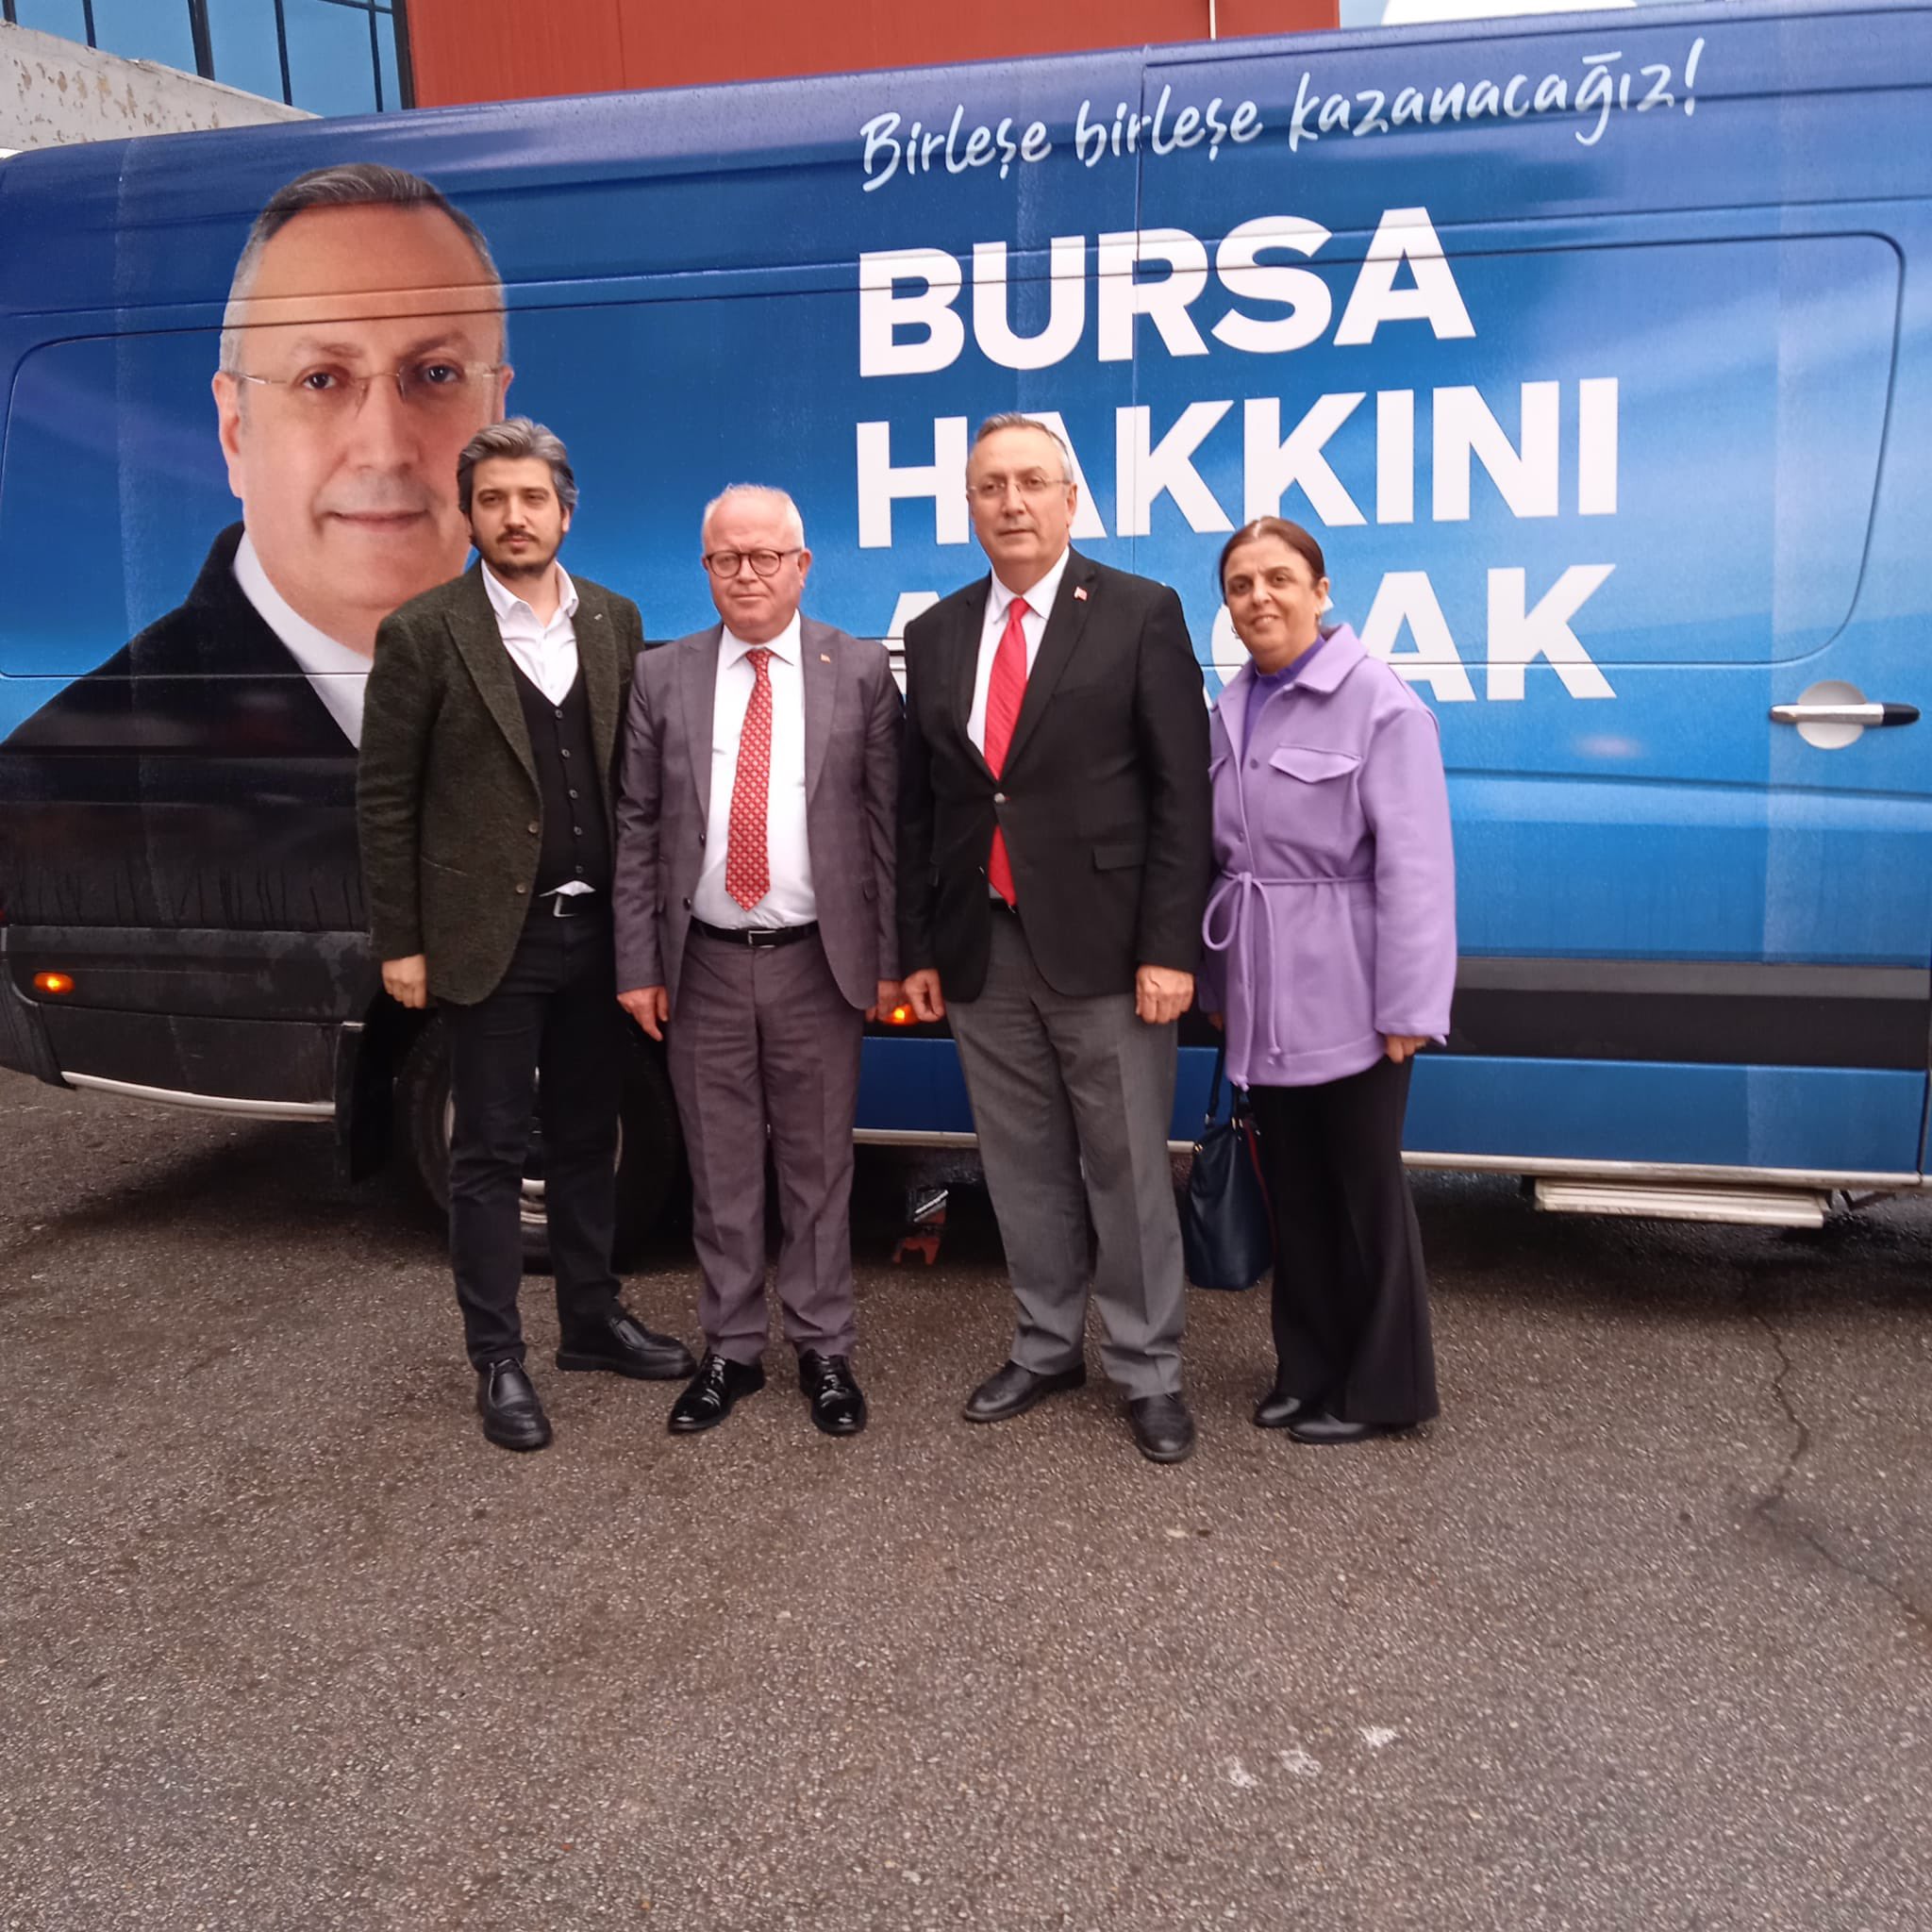 Bursa 1.Bölge milletvekili adayımız Alpaslan Yıldız,il bşk yrd ile birlikte BUTTİM Uluslararası Tekstil ve Ticaret Merkezini ziyaret ettik.